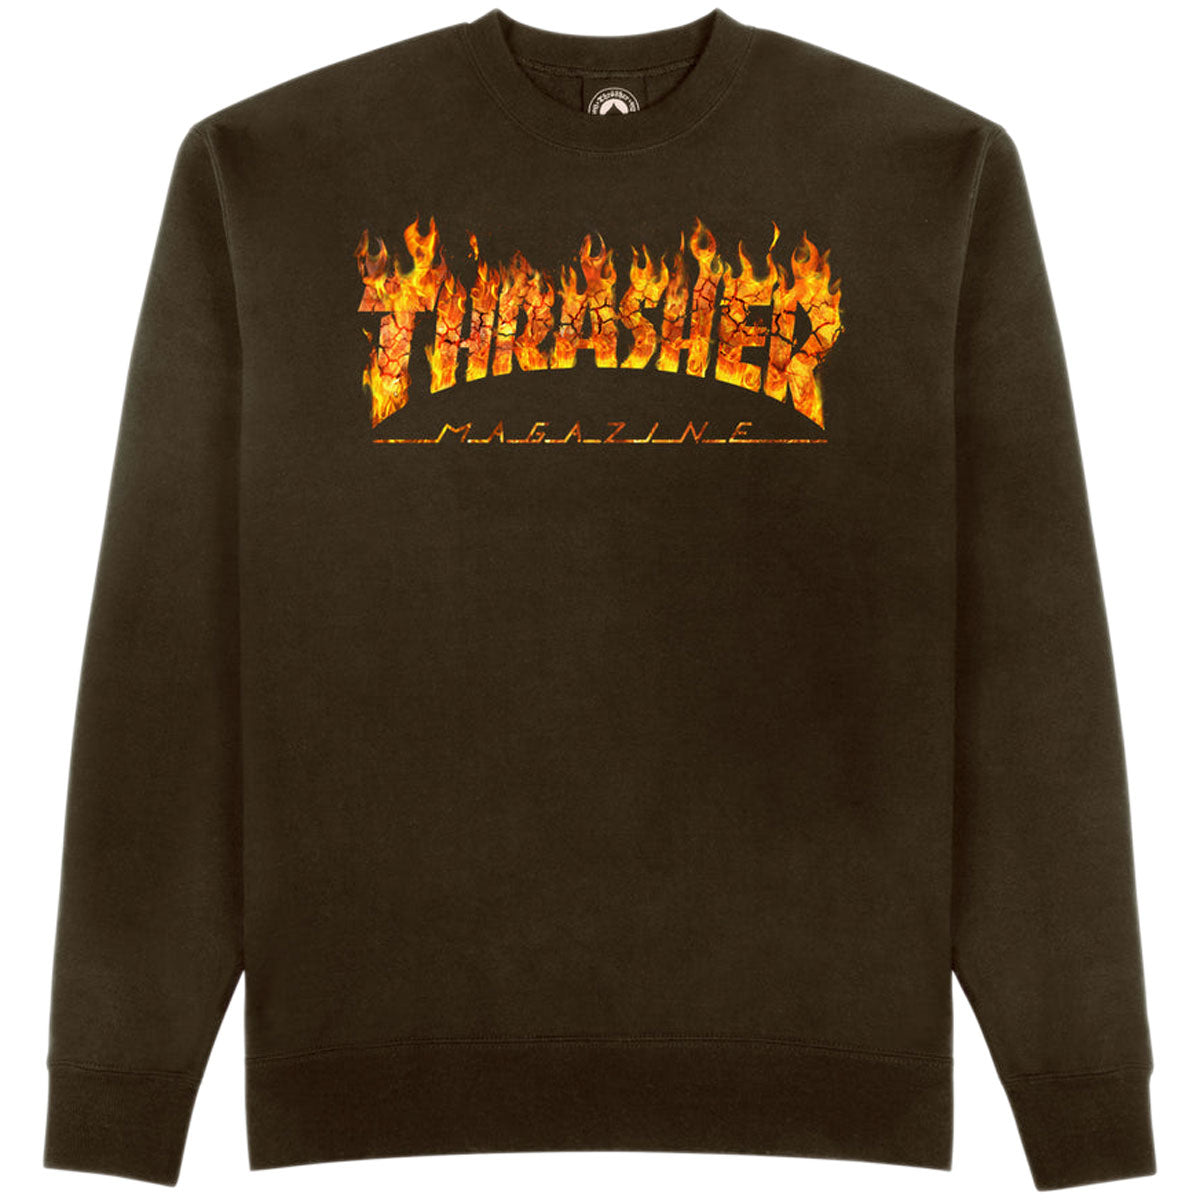 Thrasher Inferno Sweatshirt - Dark Chocolate image 1